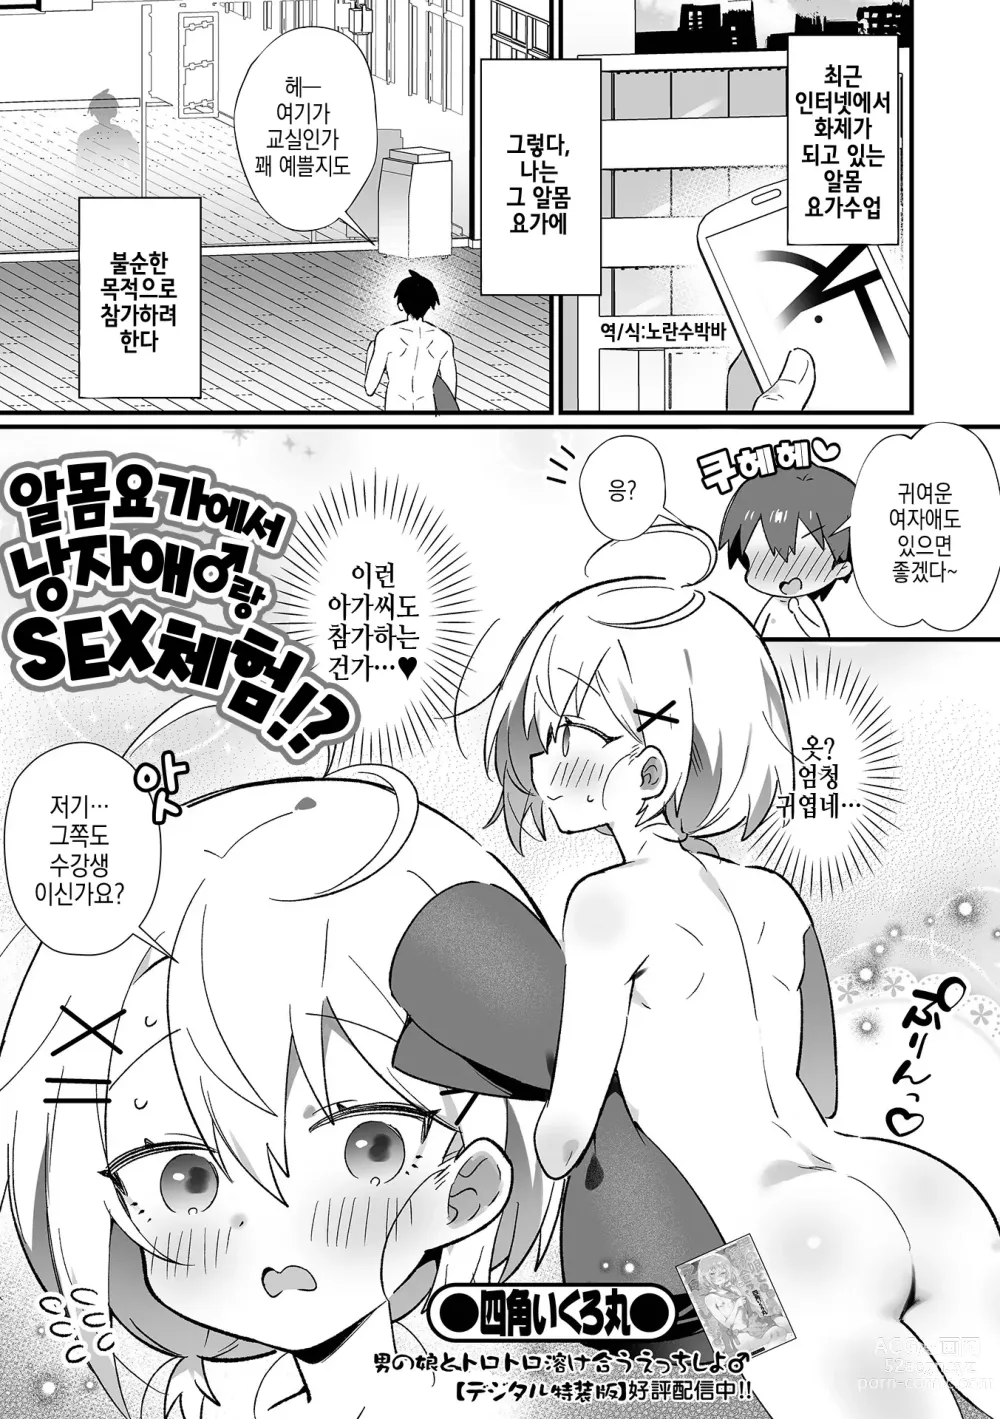 Page 2 of manga 알몸요가에서 낭자애♂랑 SEX 체험！？